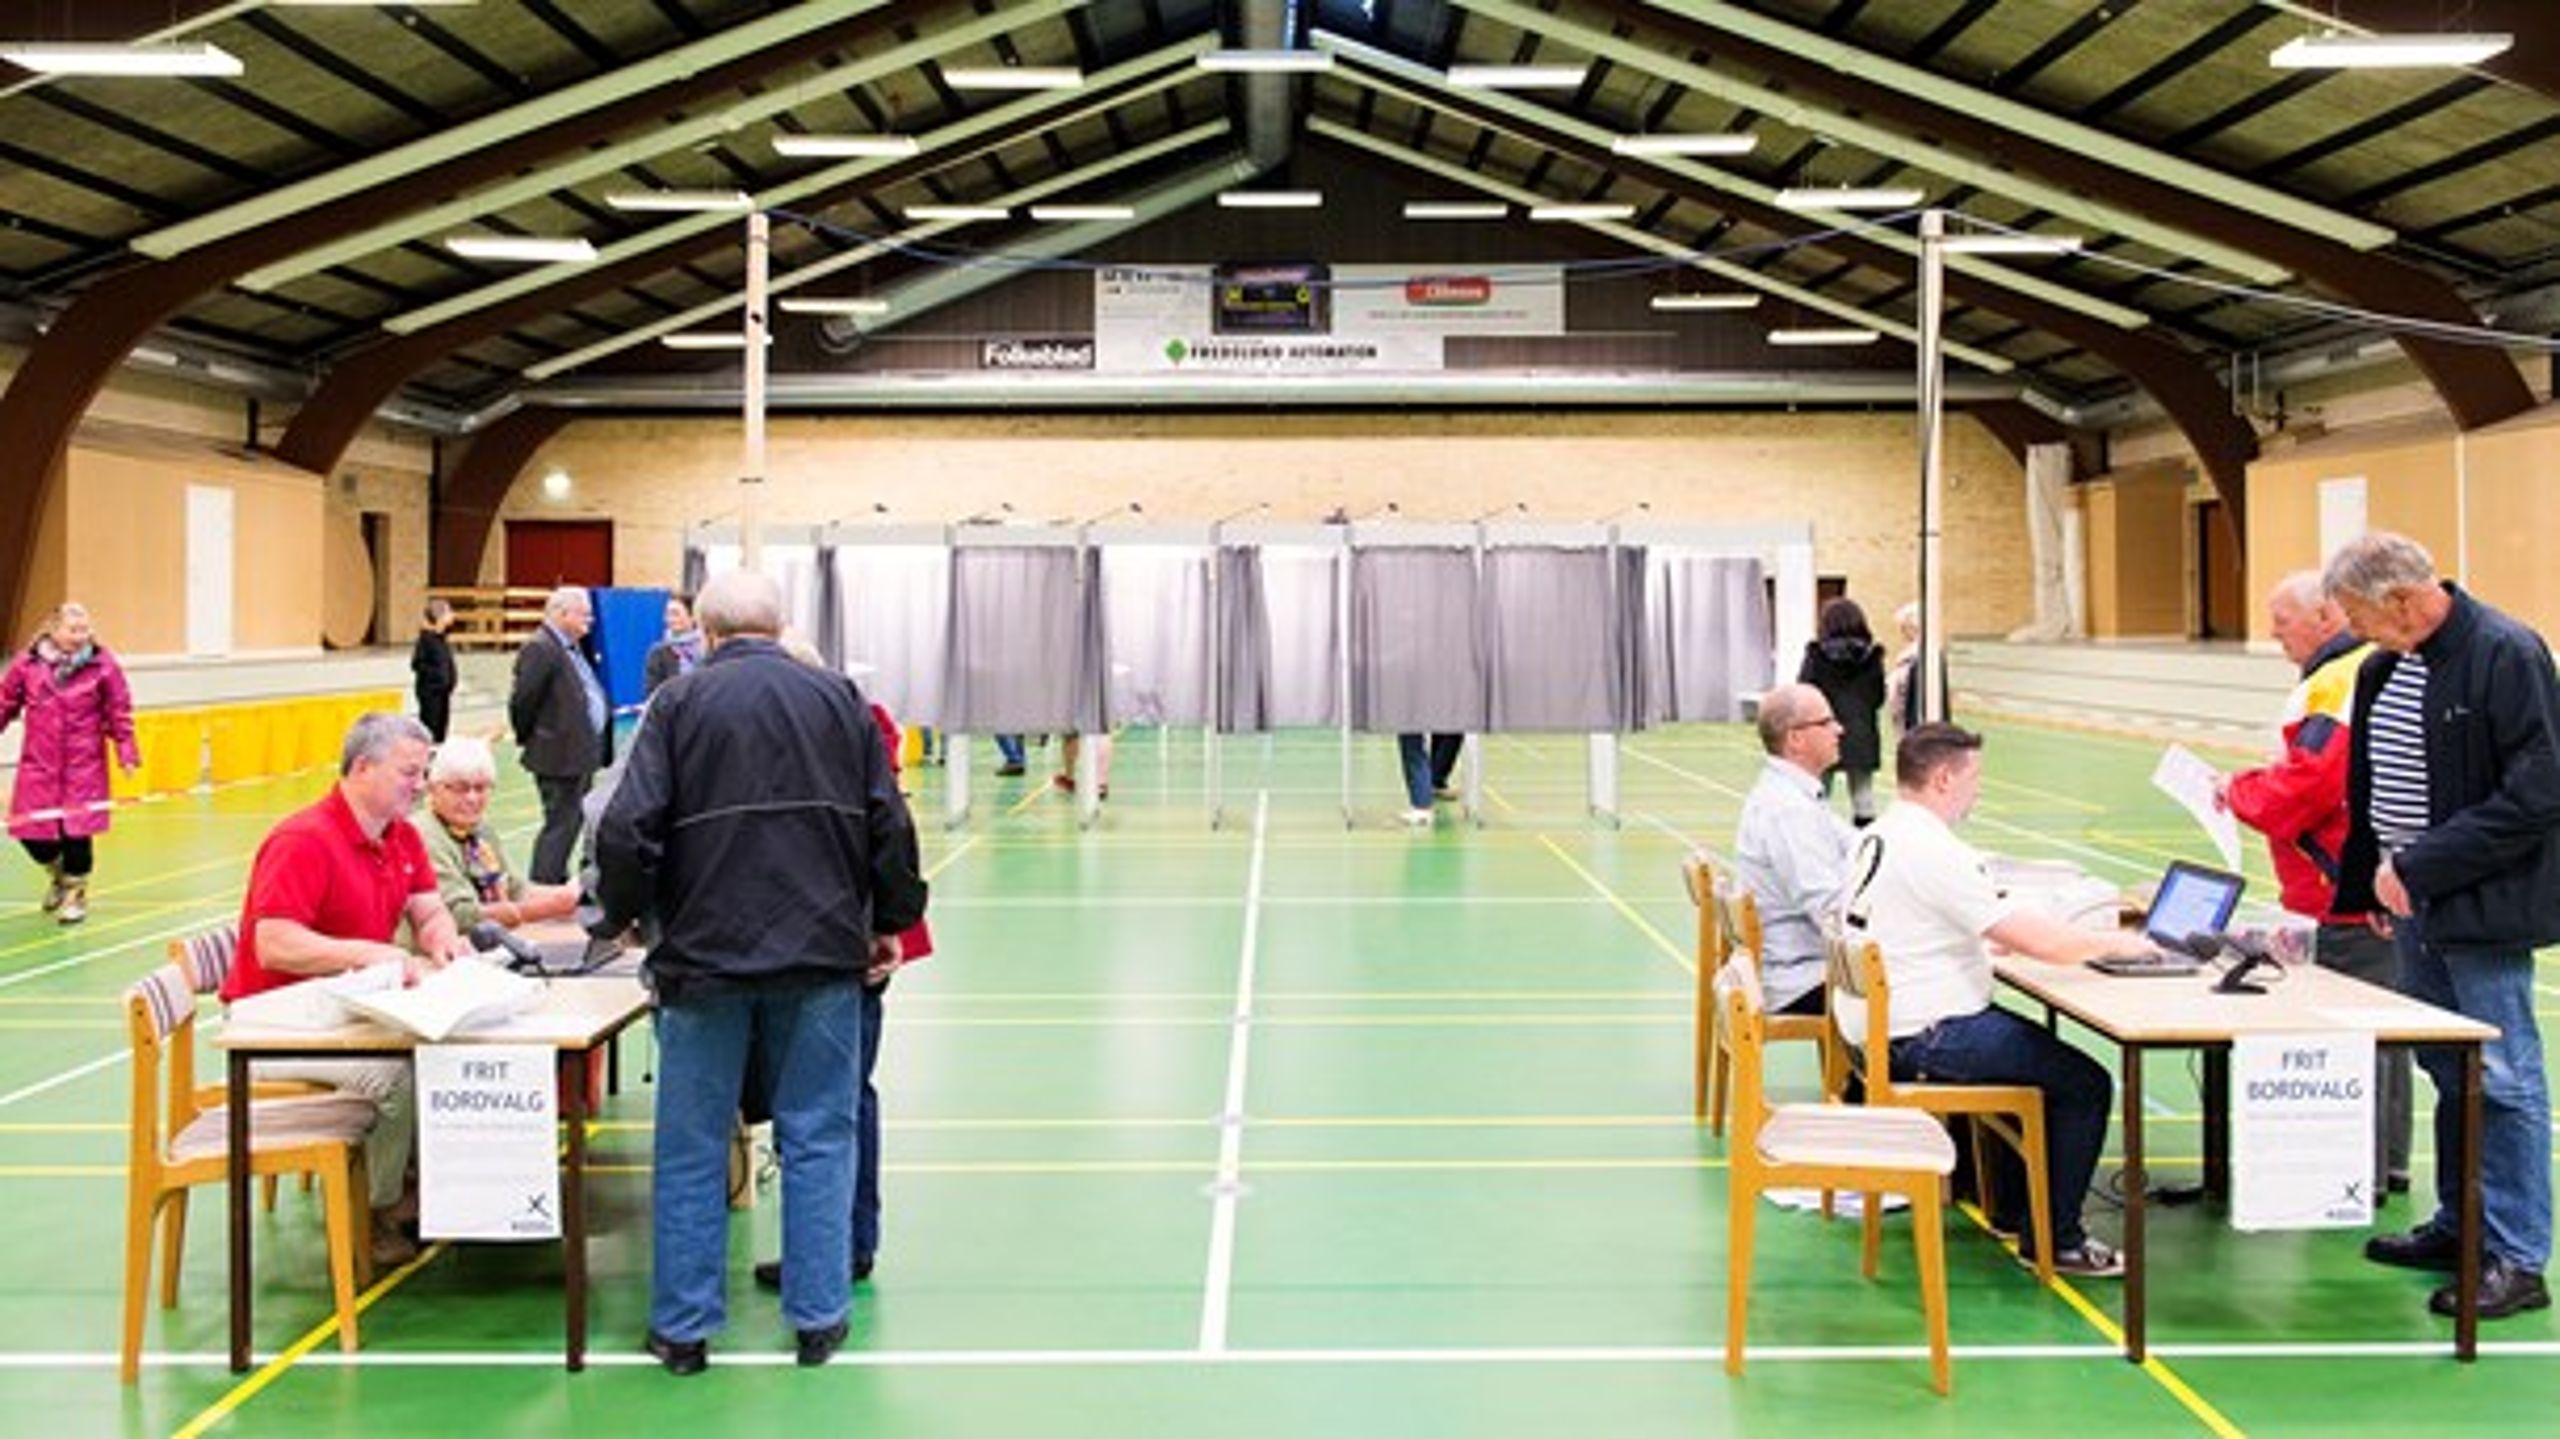 De danske vælgere er irrationelle, da stemmeprocenten til EU-valg ikke følger parlamentets stigende magt. Irrationaliteten skyldes medier og politikere, skriver Roger Buch.